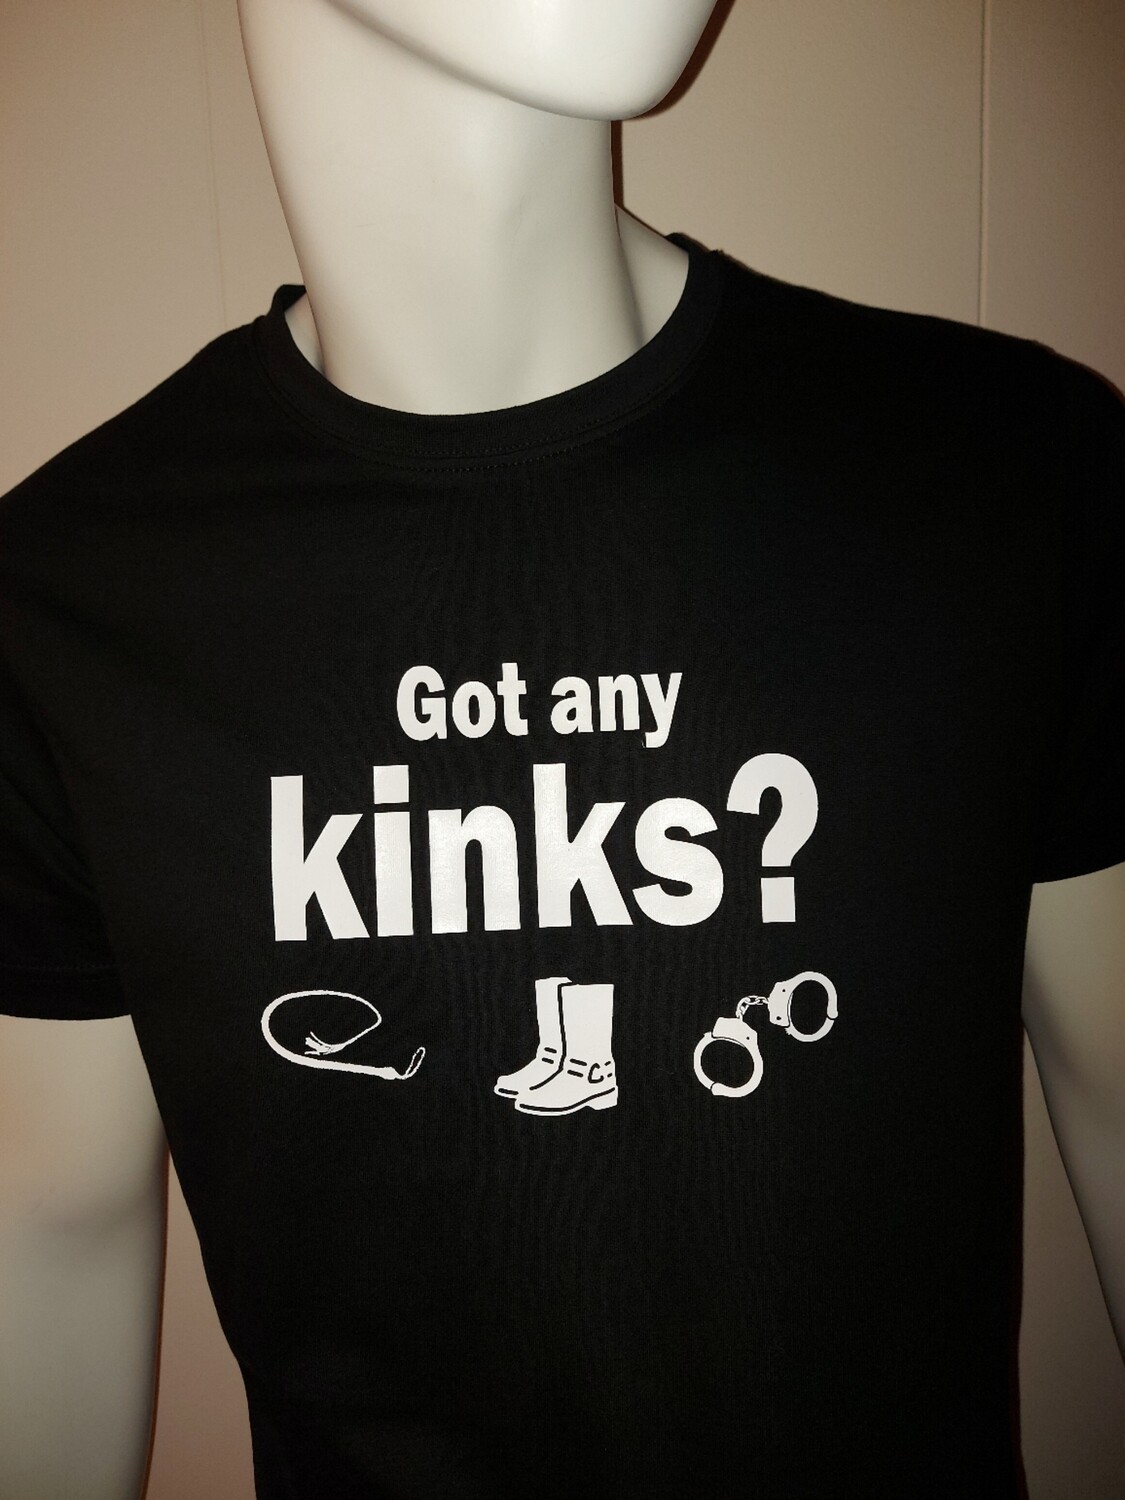 Got any kinks?